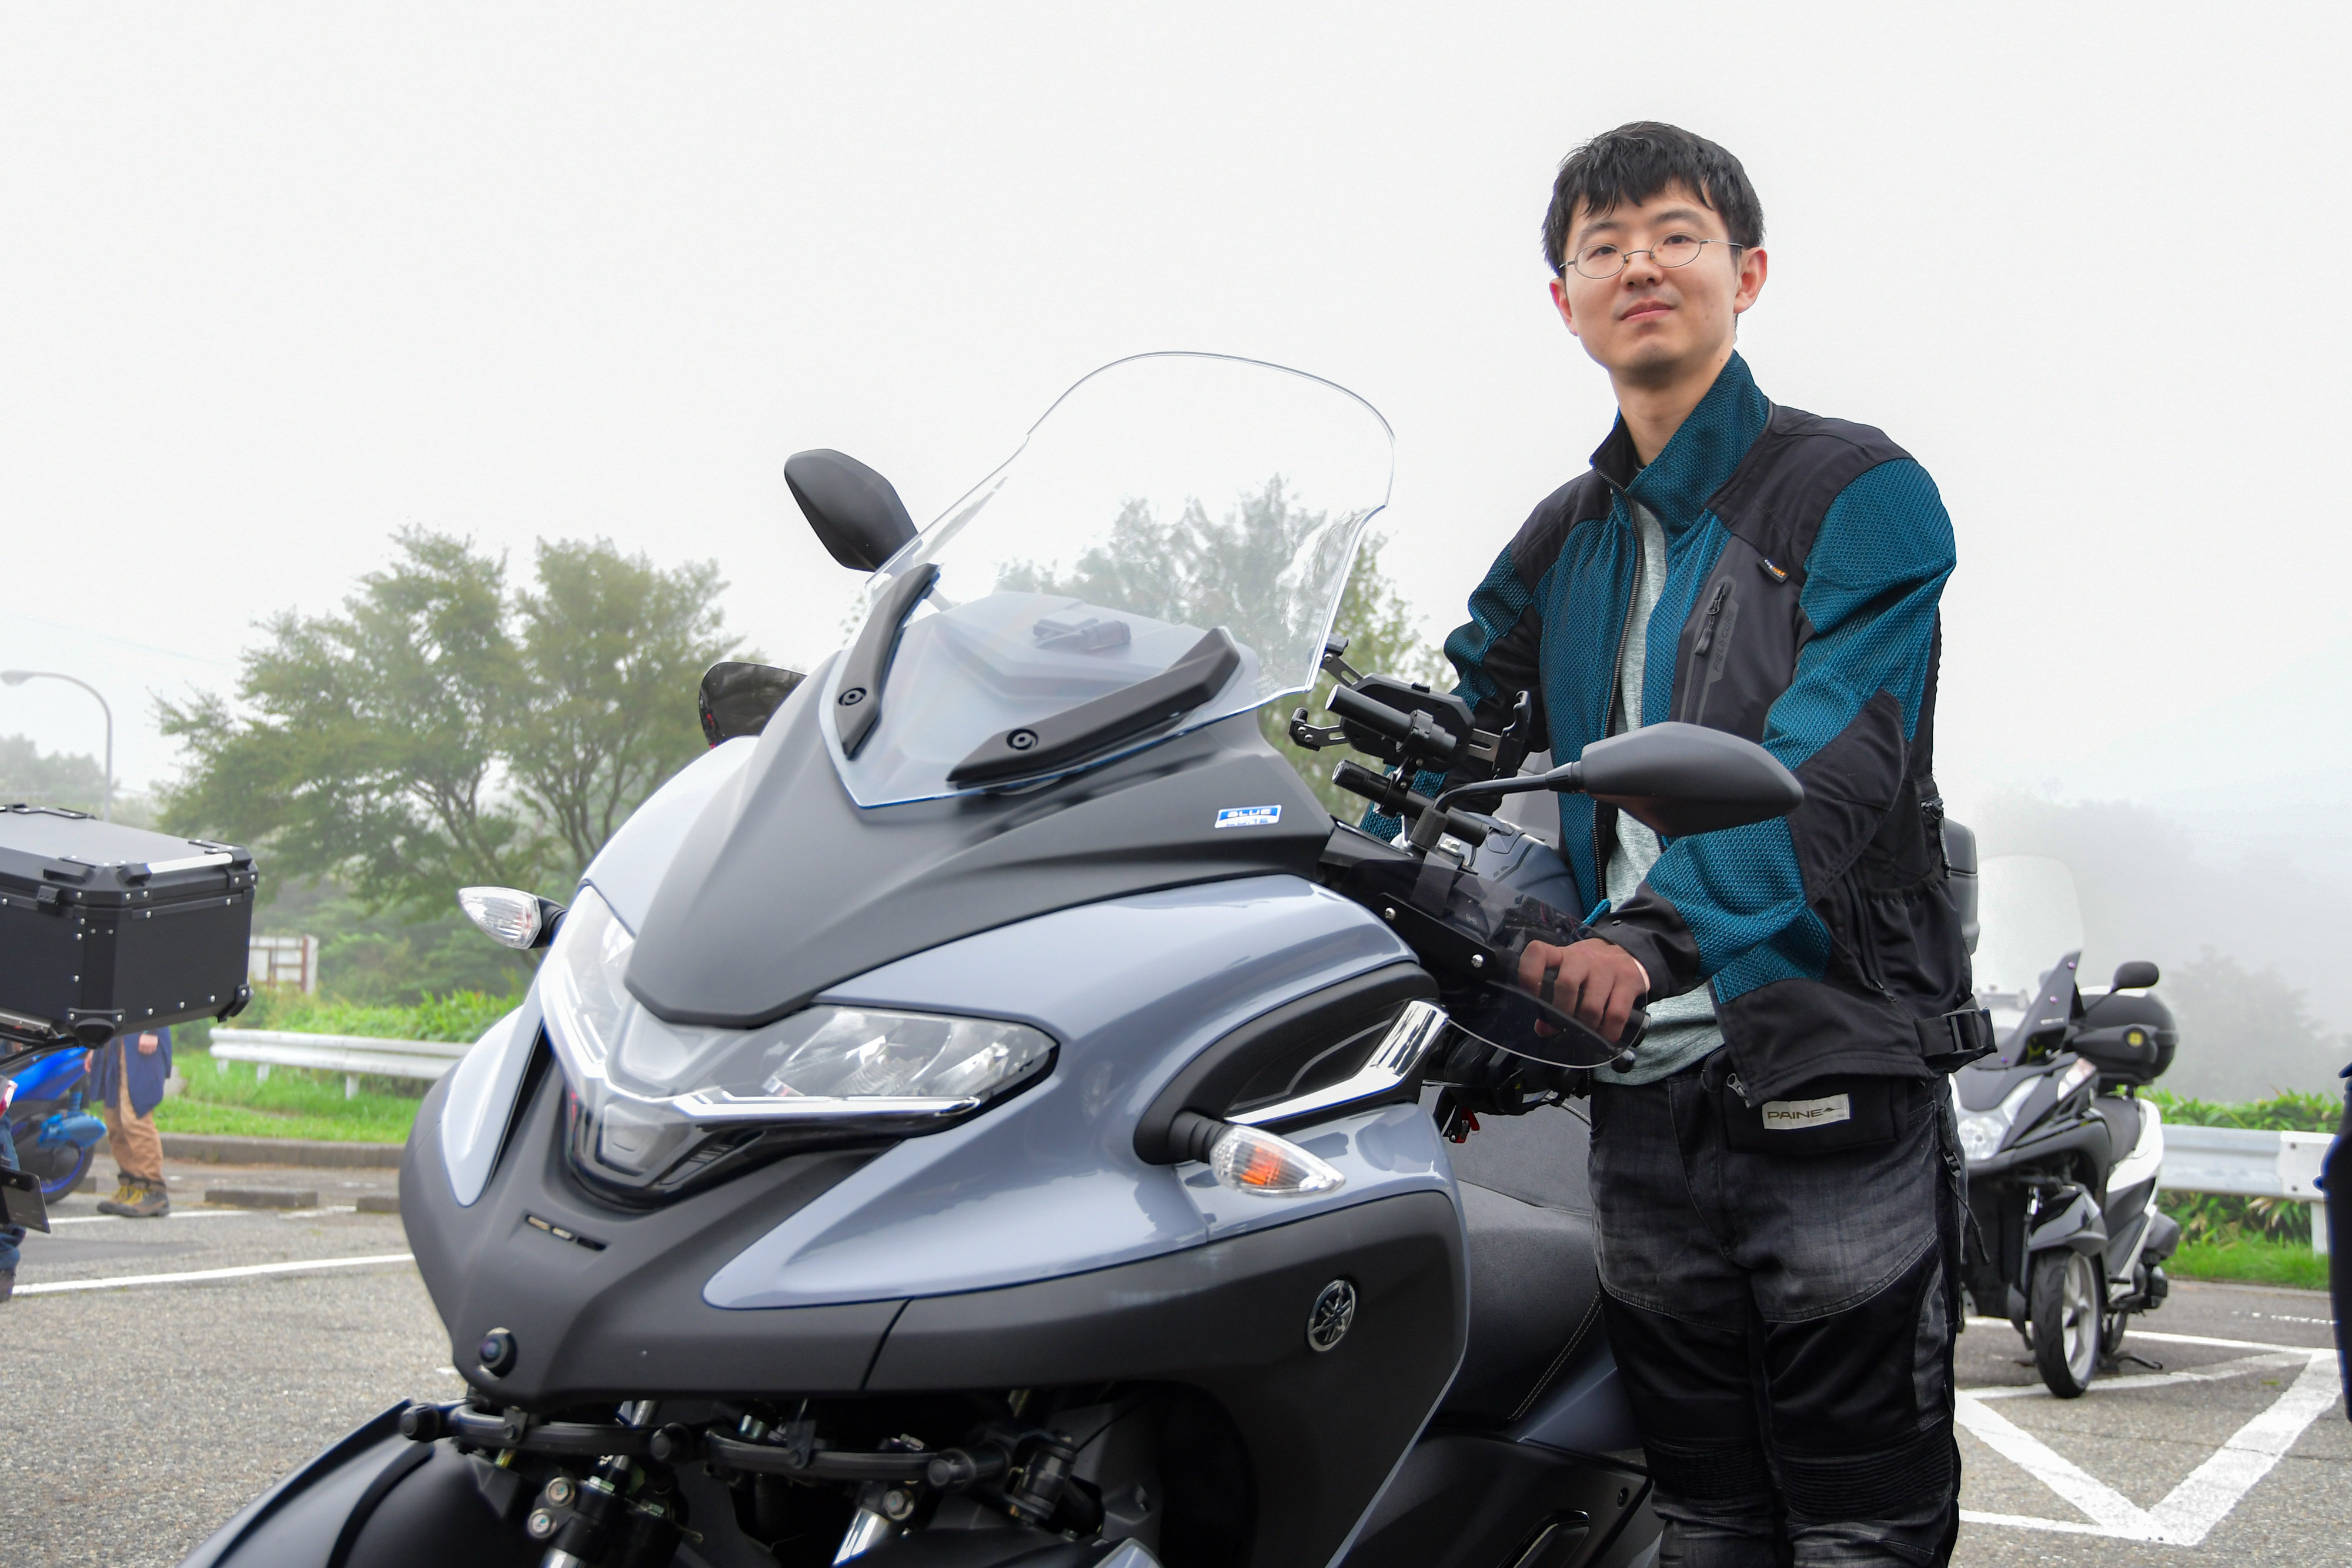 高速道路を安定して巡航できるモデルとして、250ccのスクーターから2年前に「TRICITY300」に乗り換えたバイク歴5年のオーナーさん。